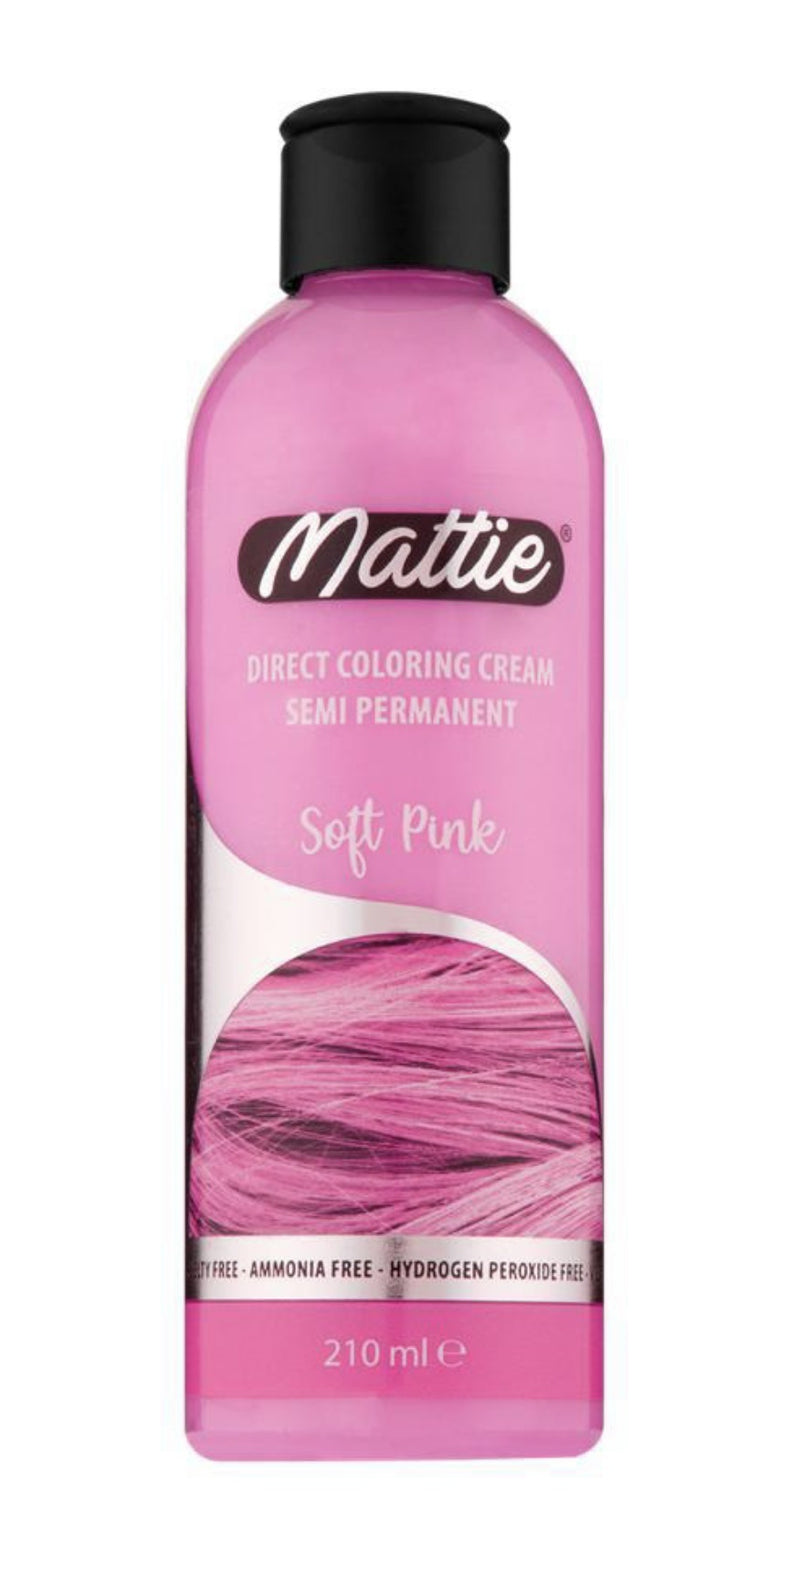 Mattie Direct Coloring Cream Semi-Permanent - Soft Pink 210ml